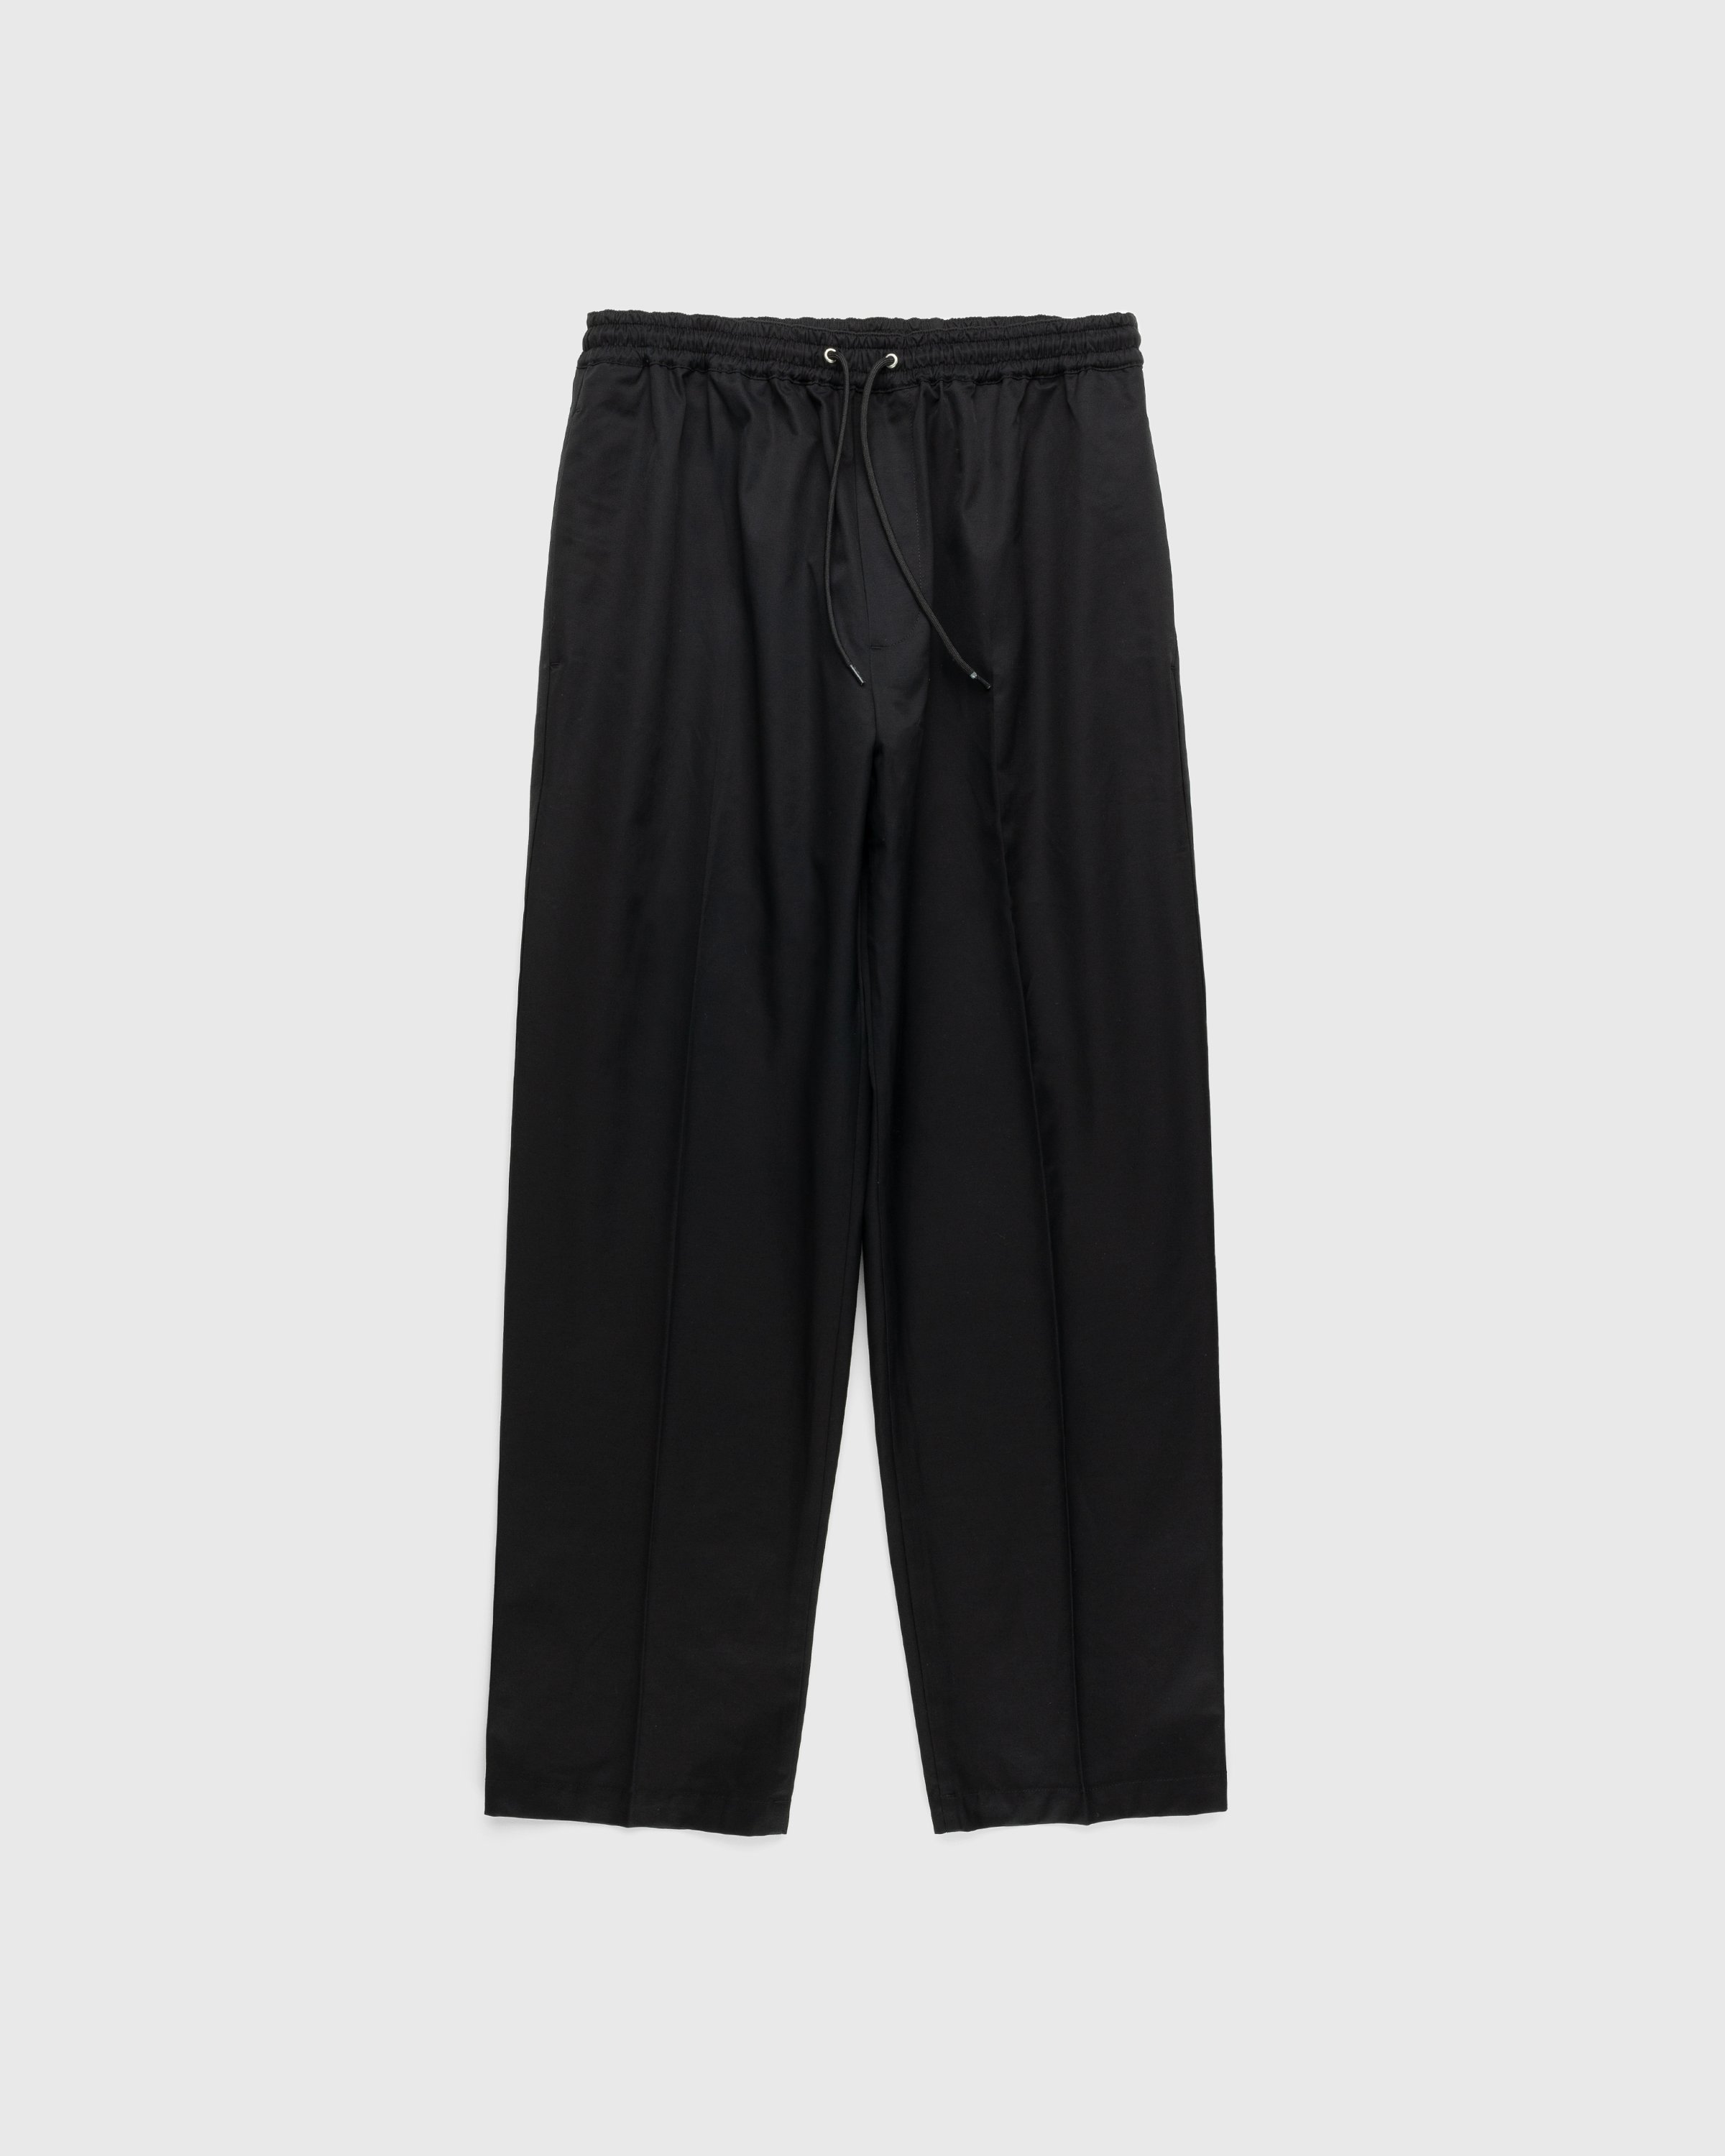 Highsnobiety - Cotton Nylon Elastic Pants Black - Clothing - Black - Image 1